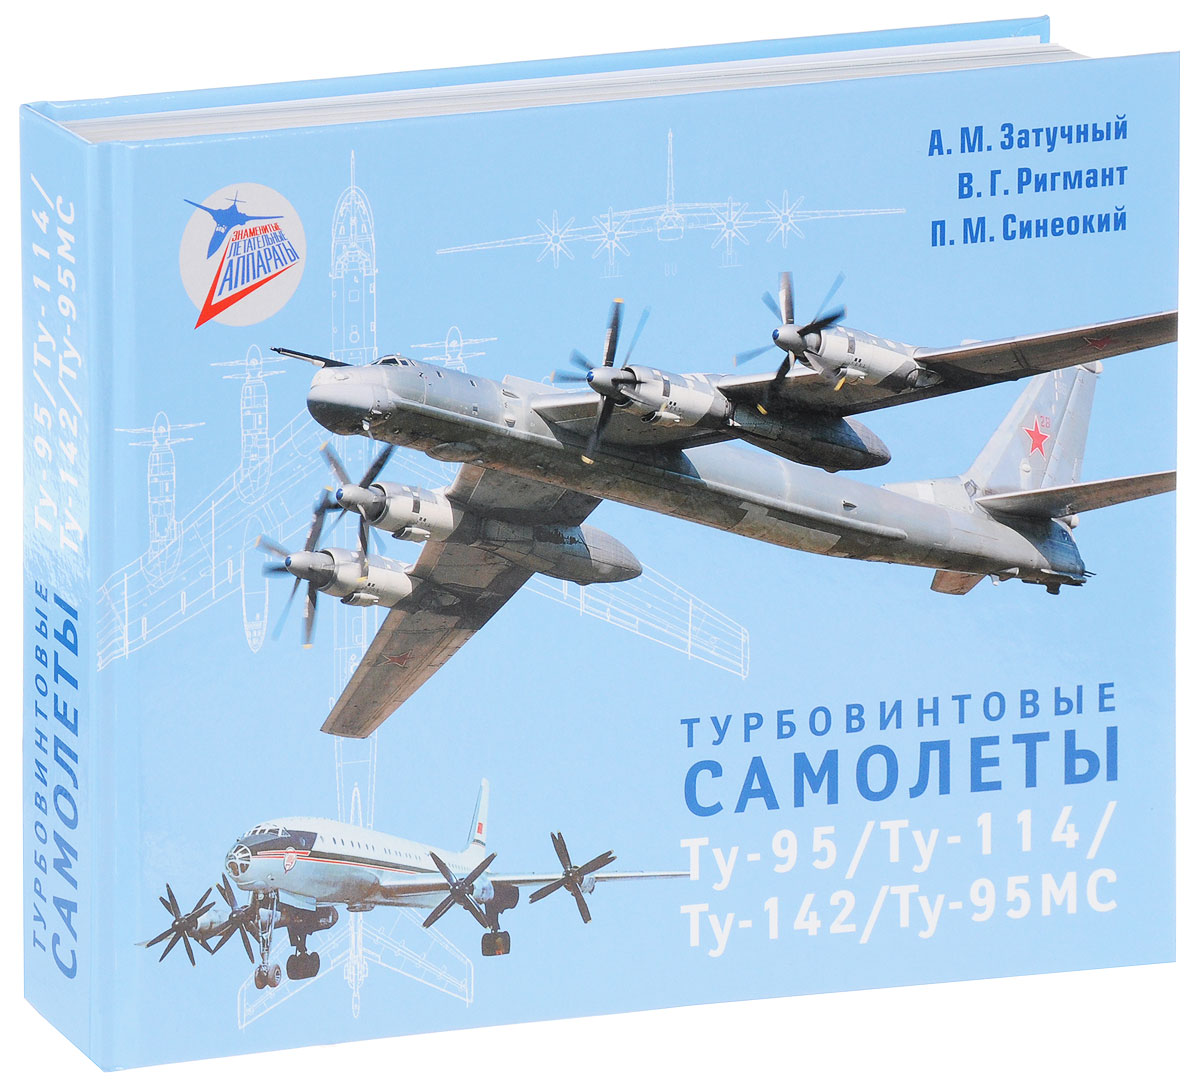 Турбовинтовые самолеты Ту-95/Ту-114/Ту-142/Ту-95МС